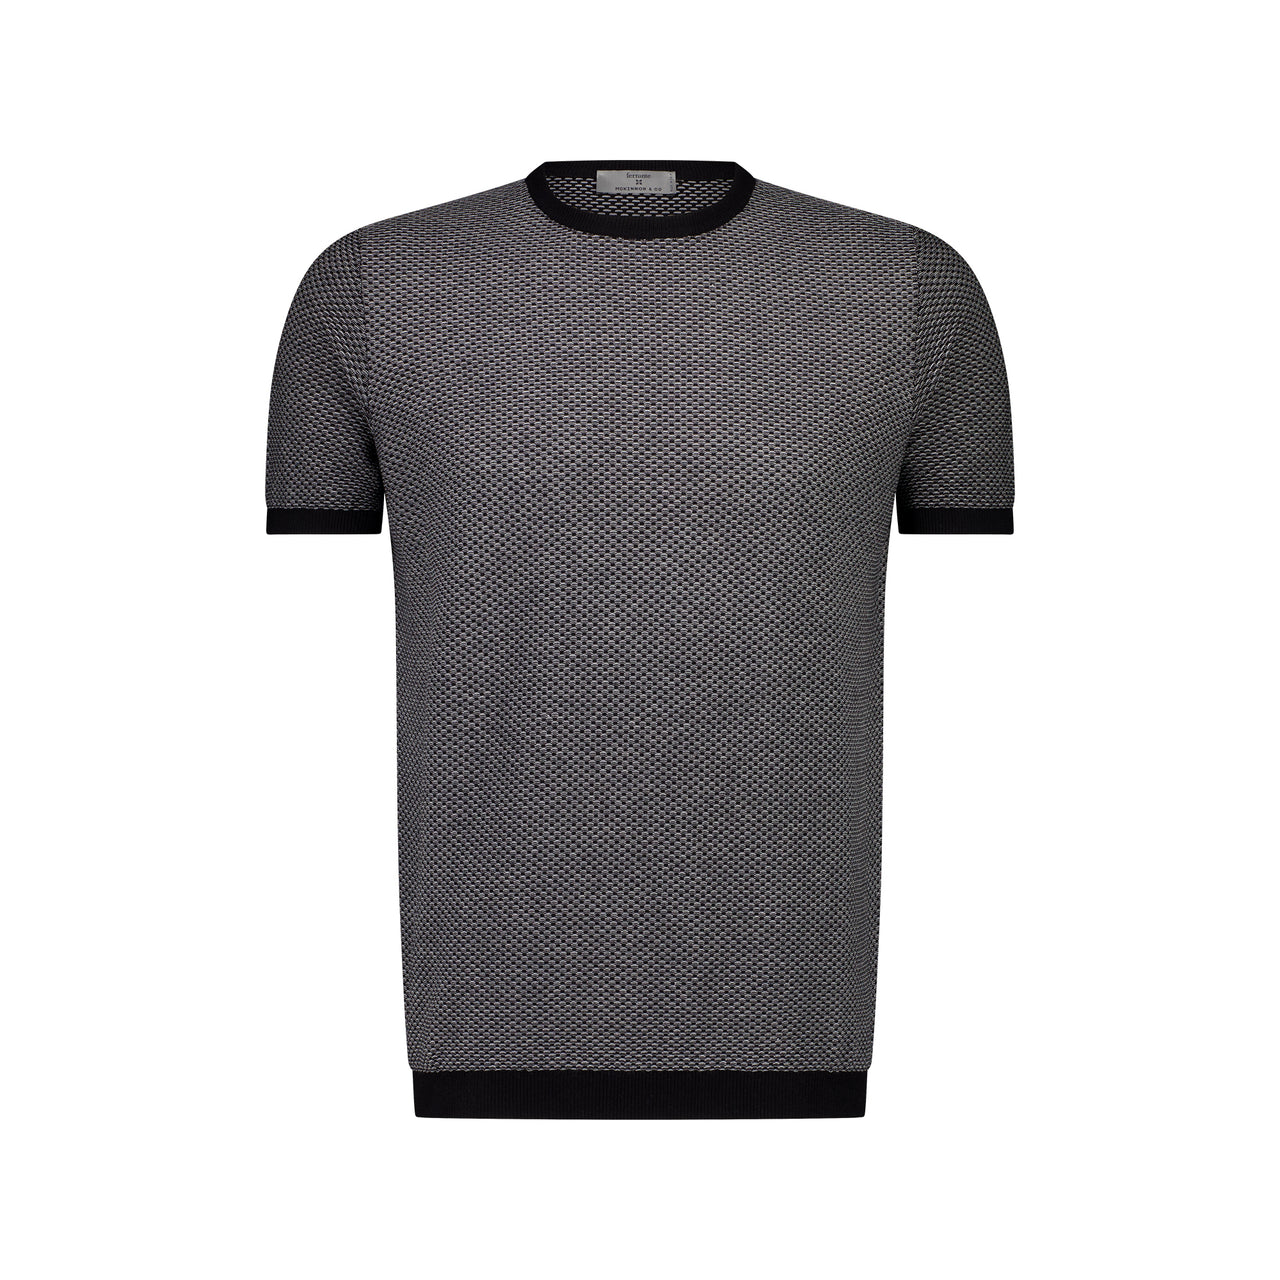 MCKINNON x FERRANTE Short Sleeve Contrast T-Shirt in BLACK